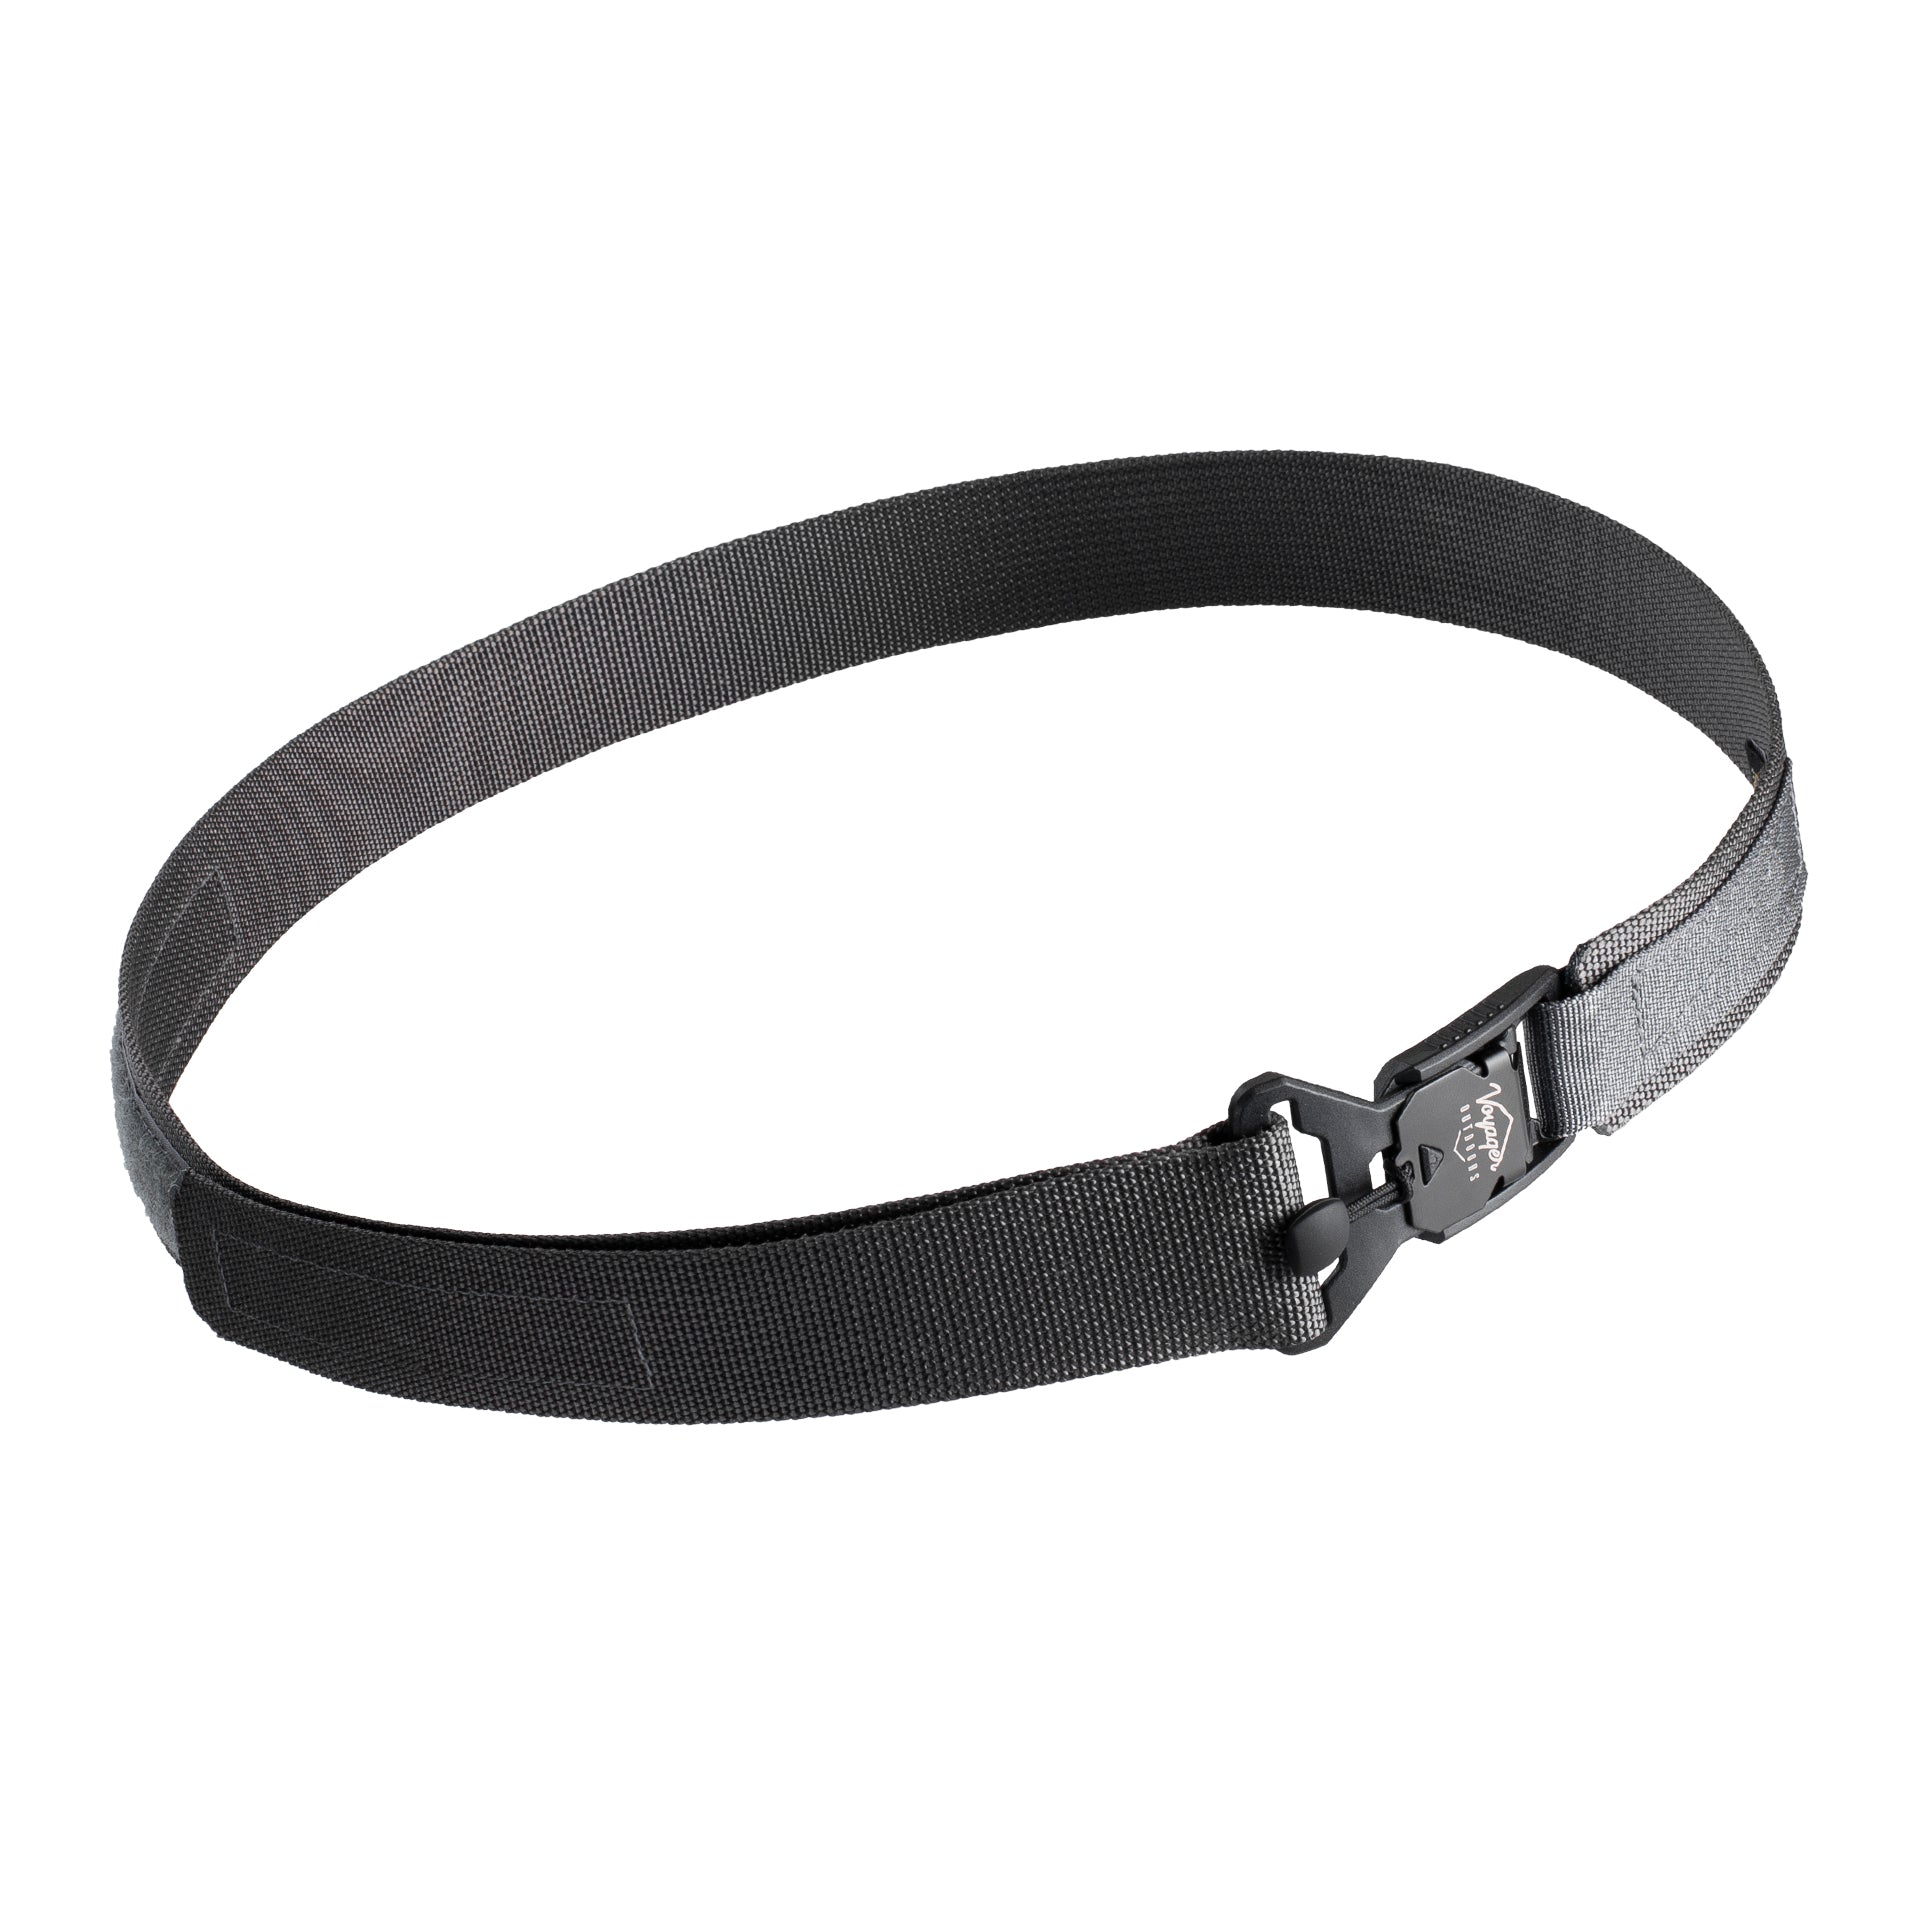 The Voyager Outdoor Belt | Hiking Belt | Easily Adjustable Belt ...